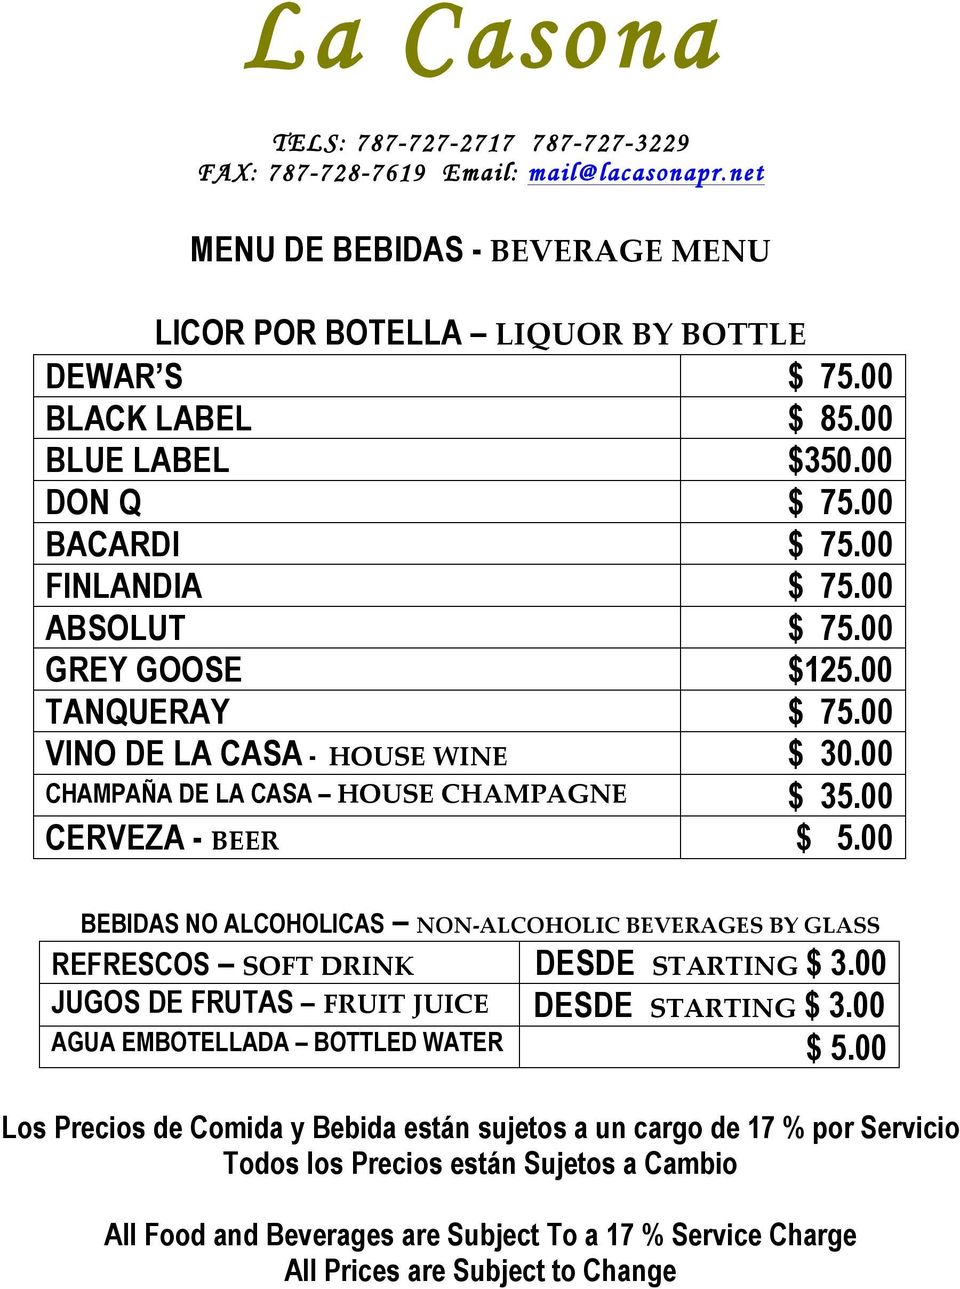 00 CERVEZA - BEER $ 5.00 BEBIDAS NO ALCOHOLICAS NON- ALCOHOLIC BEVERAGES BY GLASS REFRESCOS SOFT DRINK DESDE STARTING $ 3.00 JUGOS DE FRUTAS FRUIT JUICE DESDE STARTING $ 3.